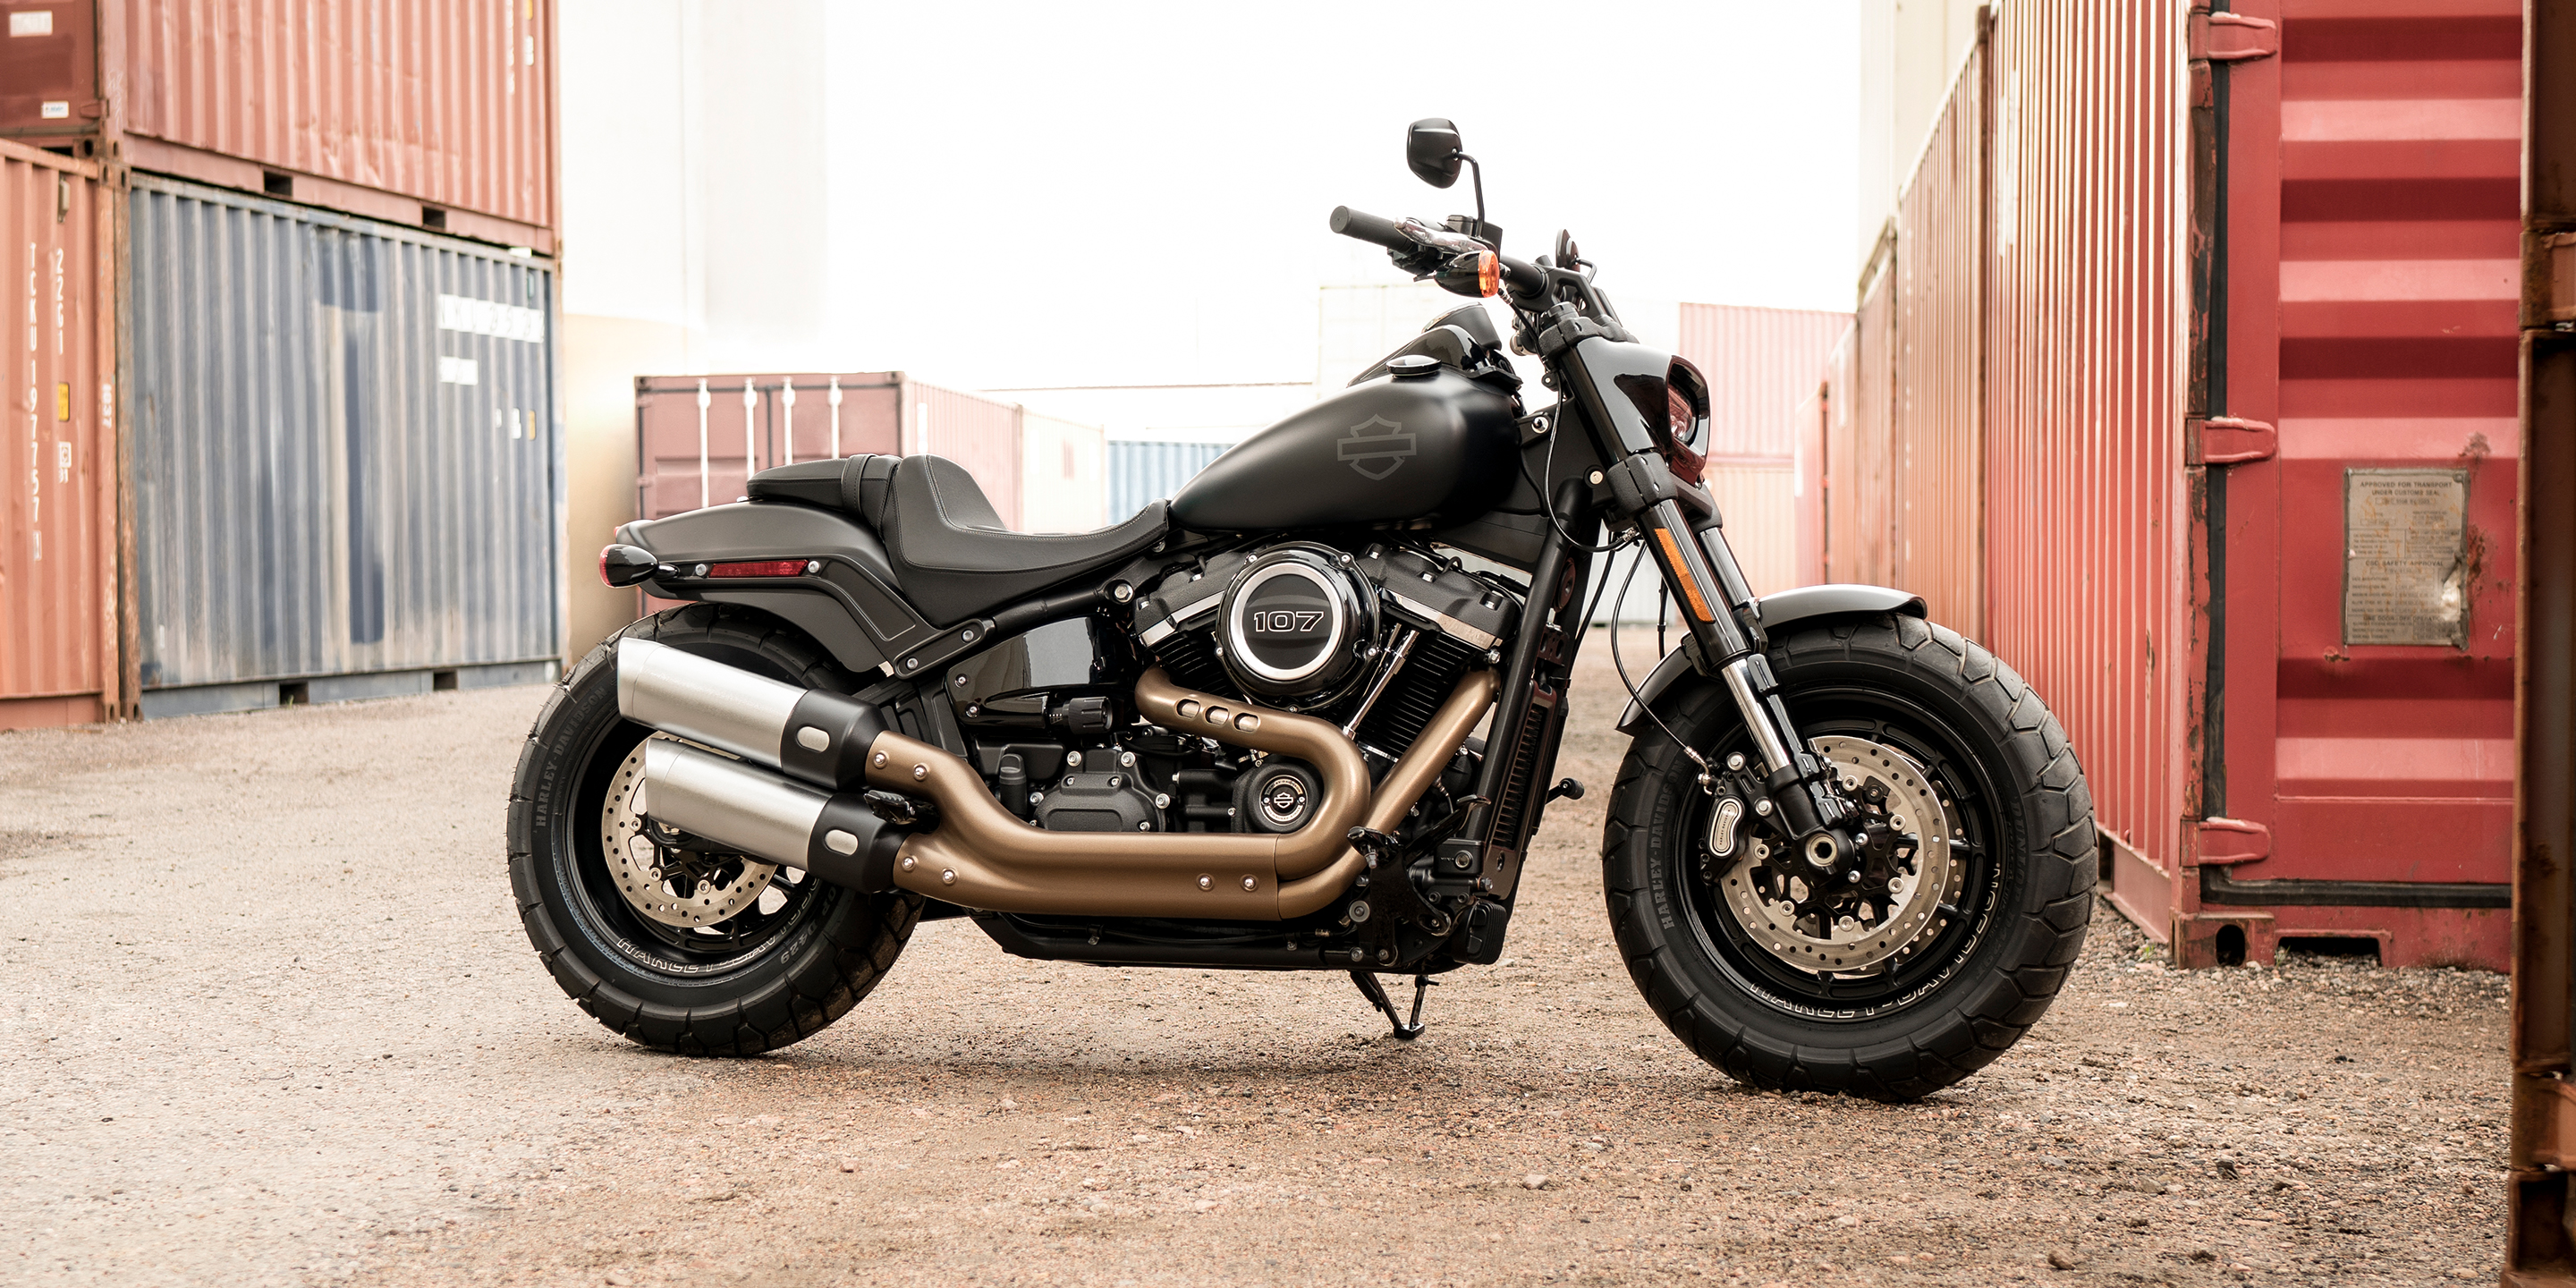 2019 Fat Bob Motorcycle Harley Davidson India